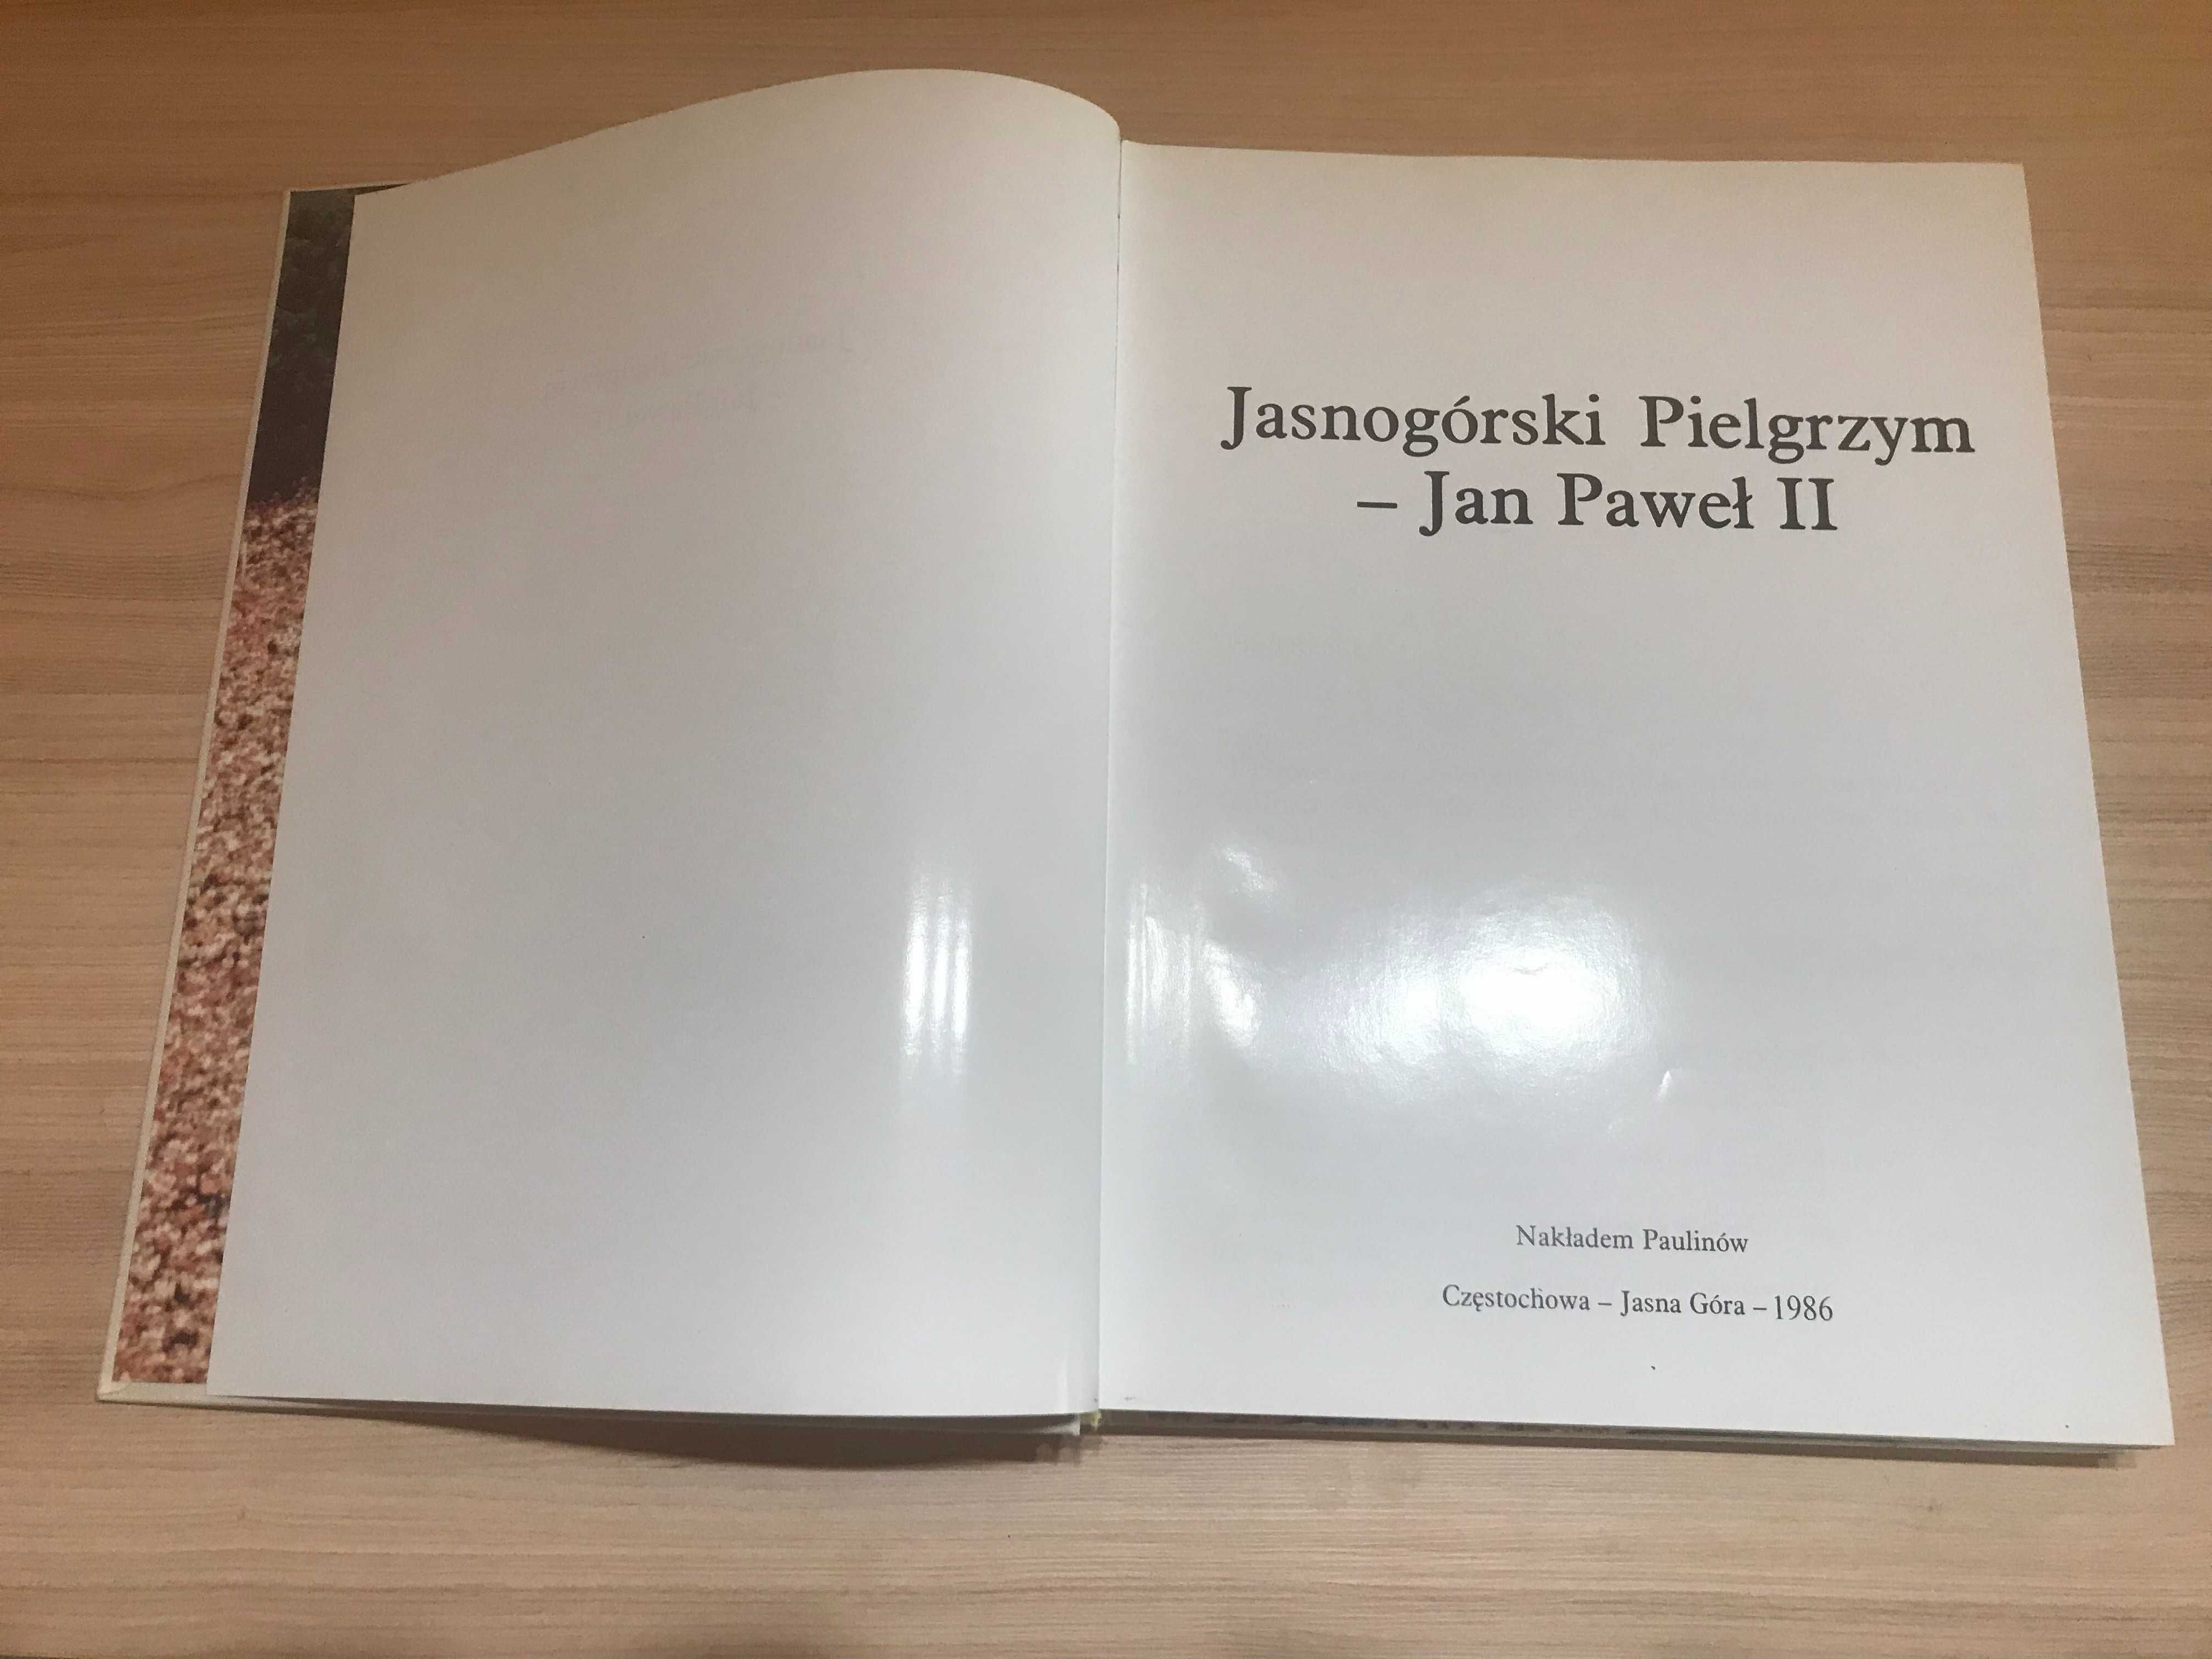 Jasnogórski Pielgrzym - Jan Paweł II 1986 Unikat!